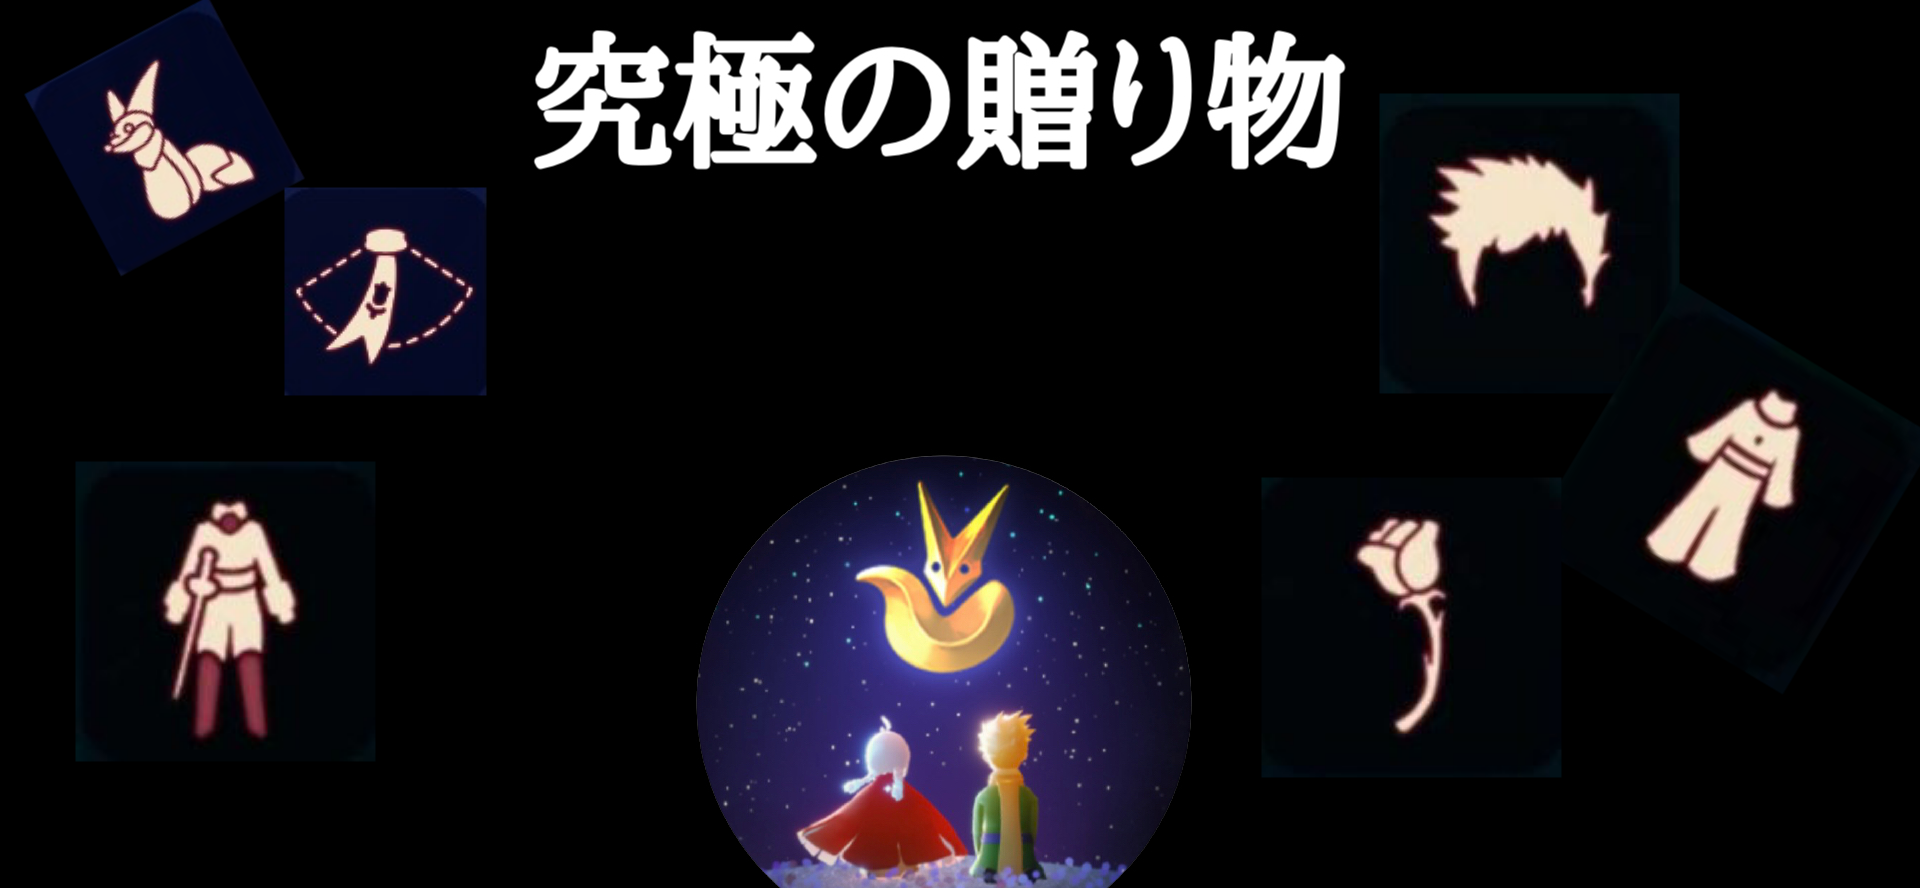 星の王子さまの季節の究極の贈り物&アイテム | Sky星を紡ぐ子どもたち攻略 - ゲームウィキ.jp